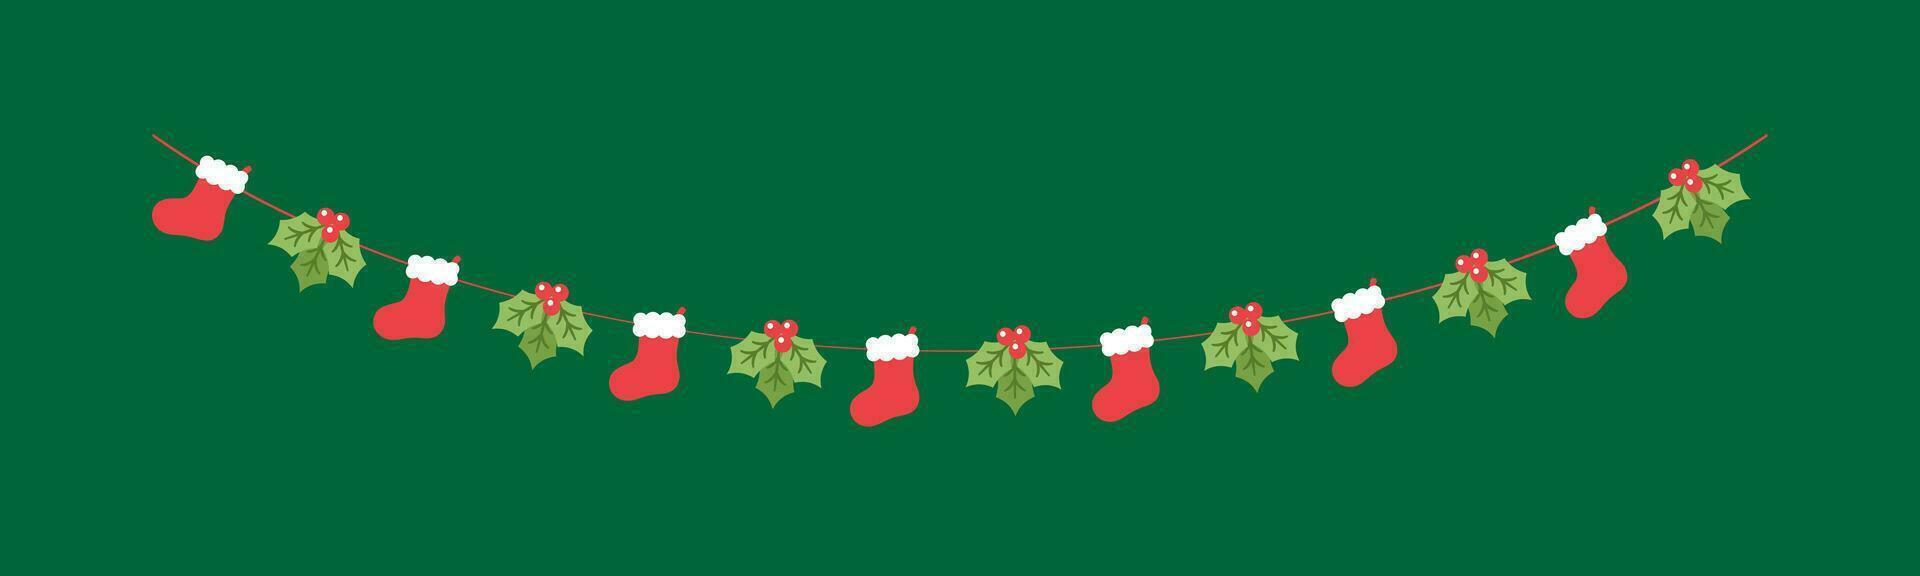 Kerstmis kous en maretak slinger vector illustratie, Kerstmis grafiek feestelijk winter vakantie seizoen vlaggedoek